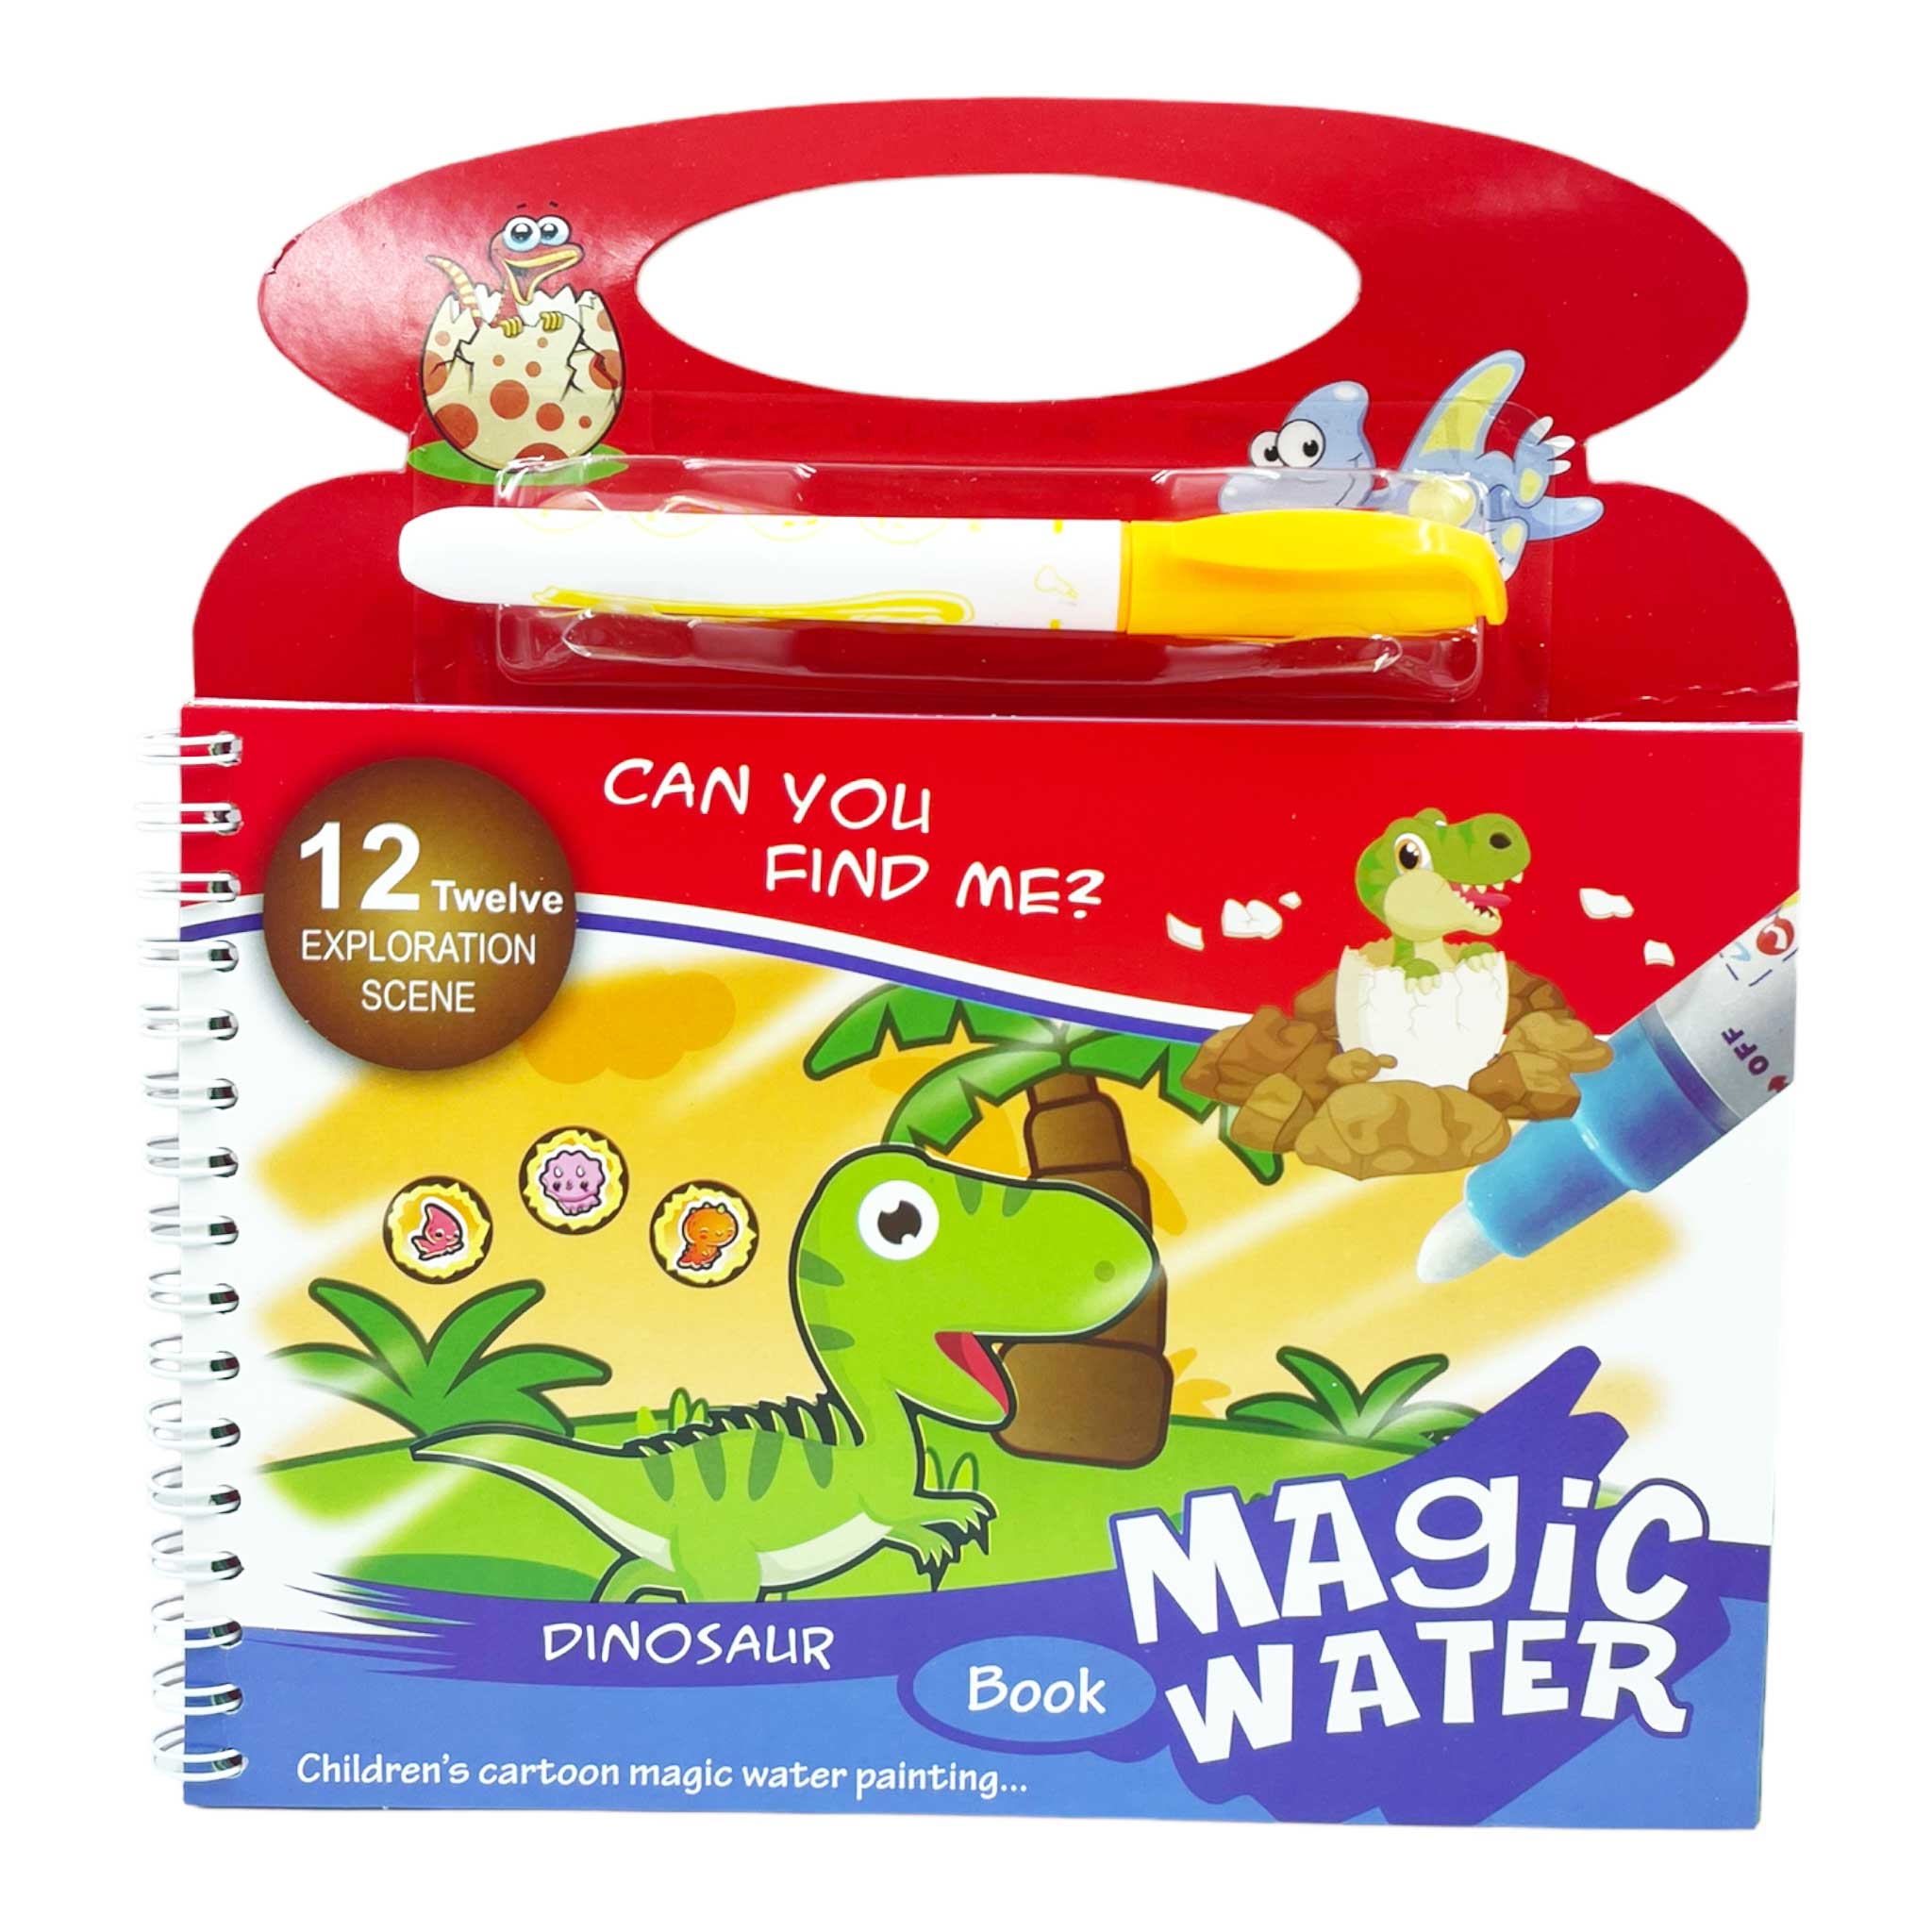 Magic Water Coloring Book - Animal